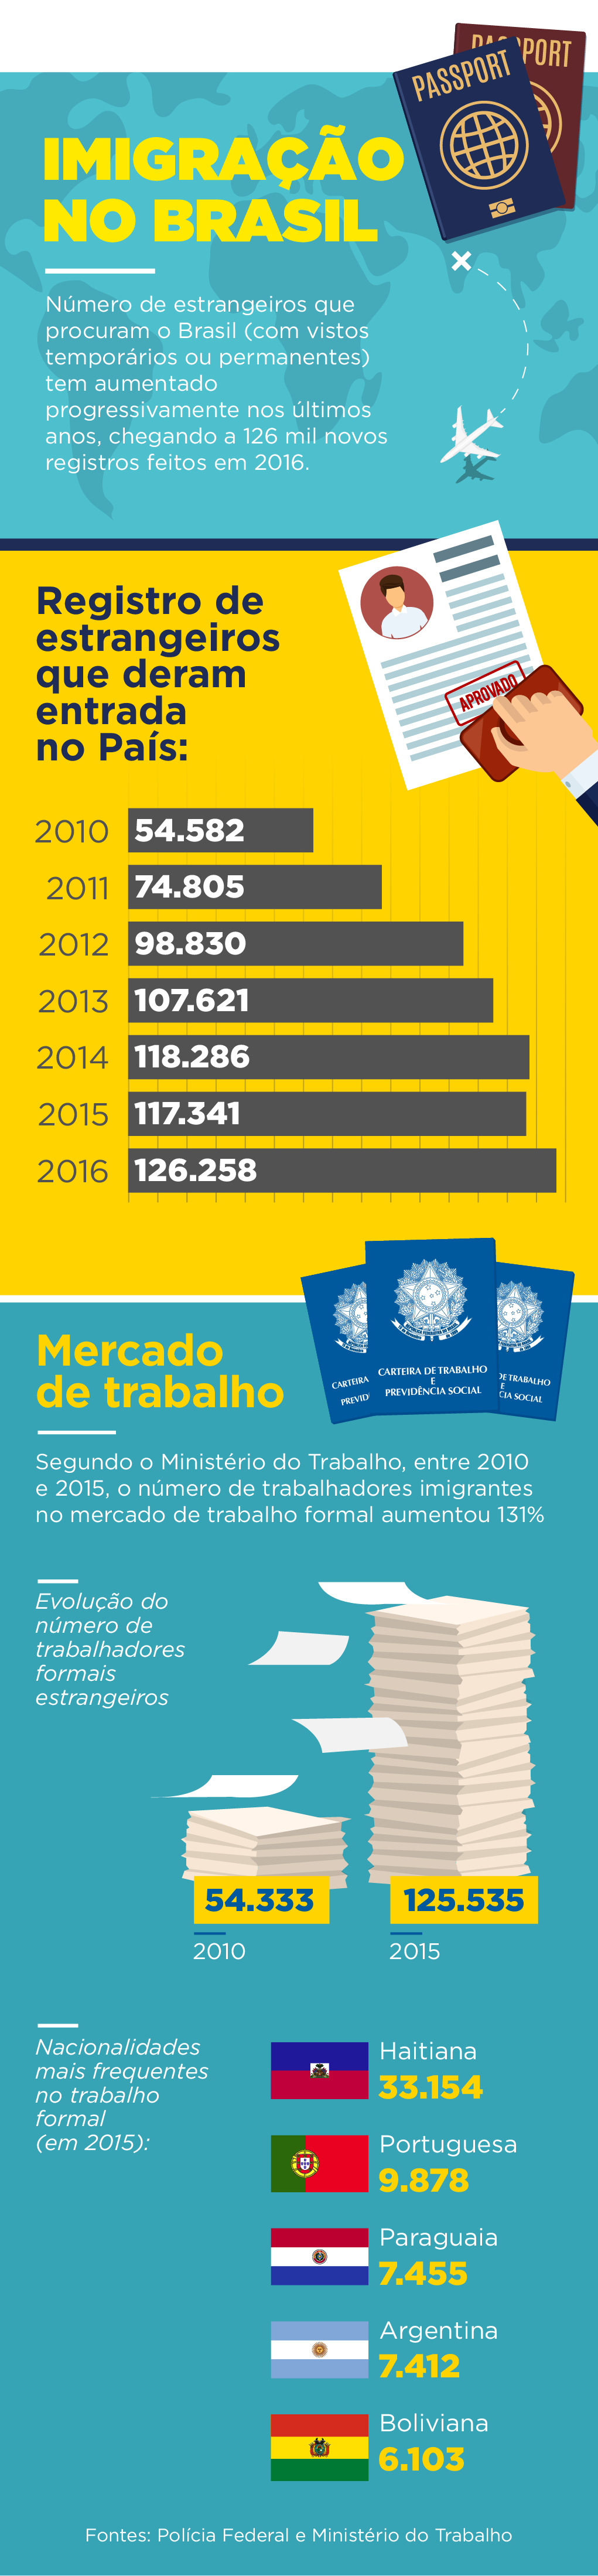  Ministério da Justiça e Segurança Pública, Ministério das Relações Exteriores e Agência Brasil